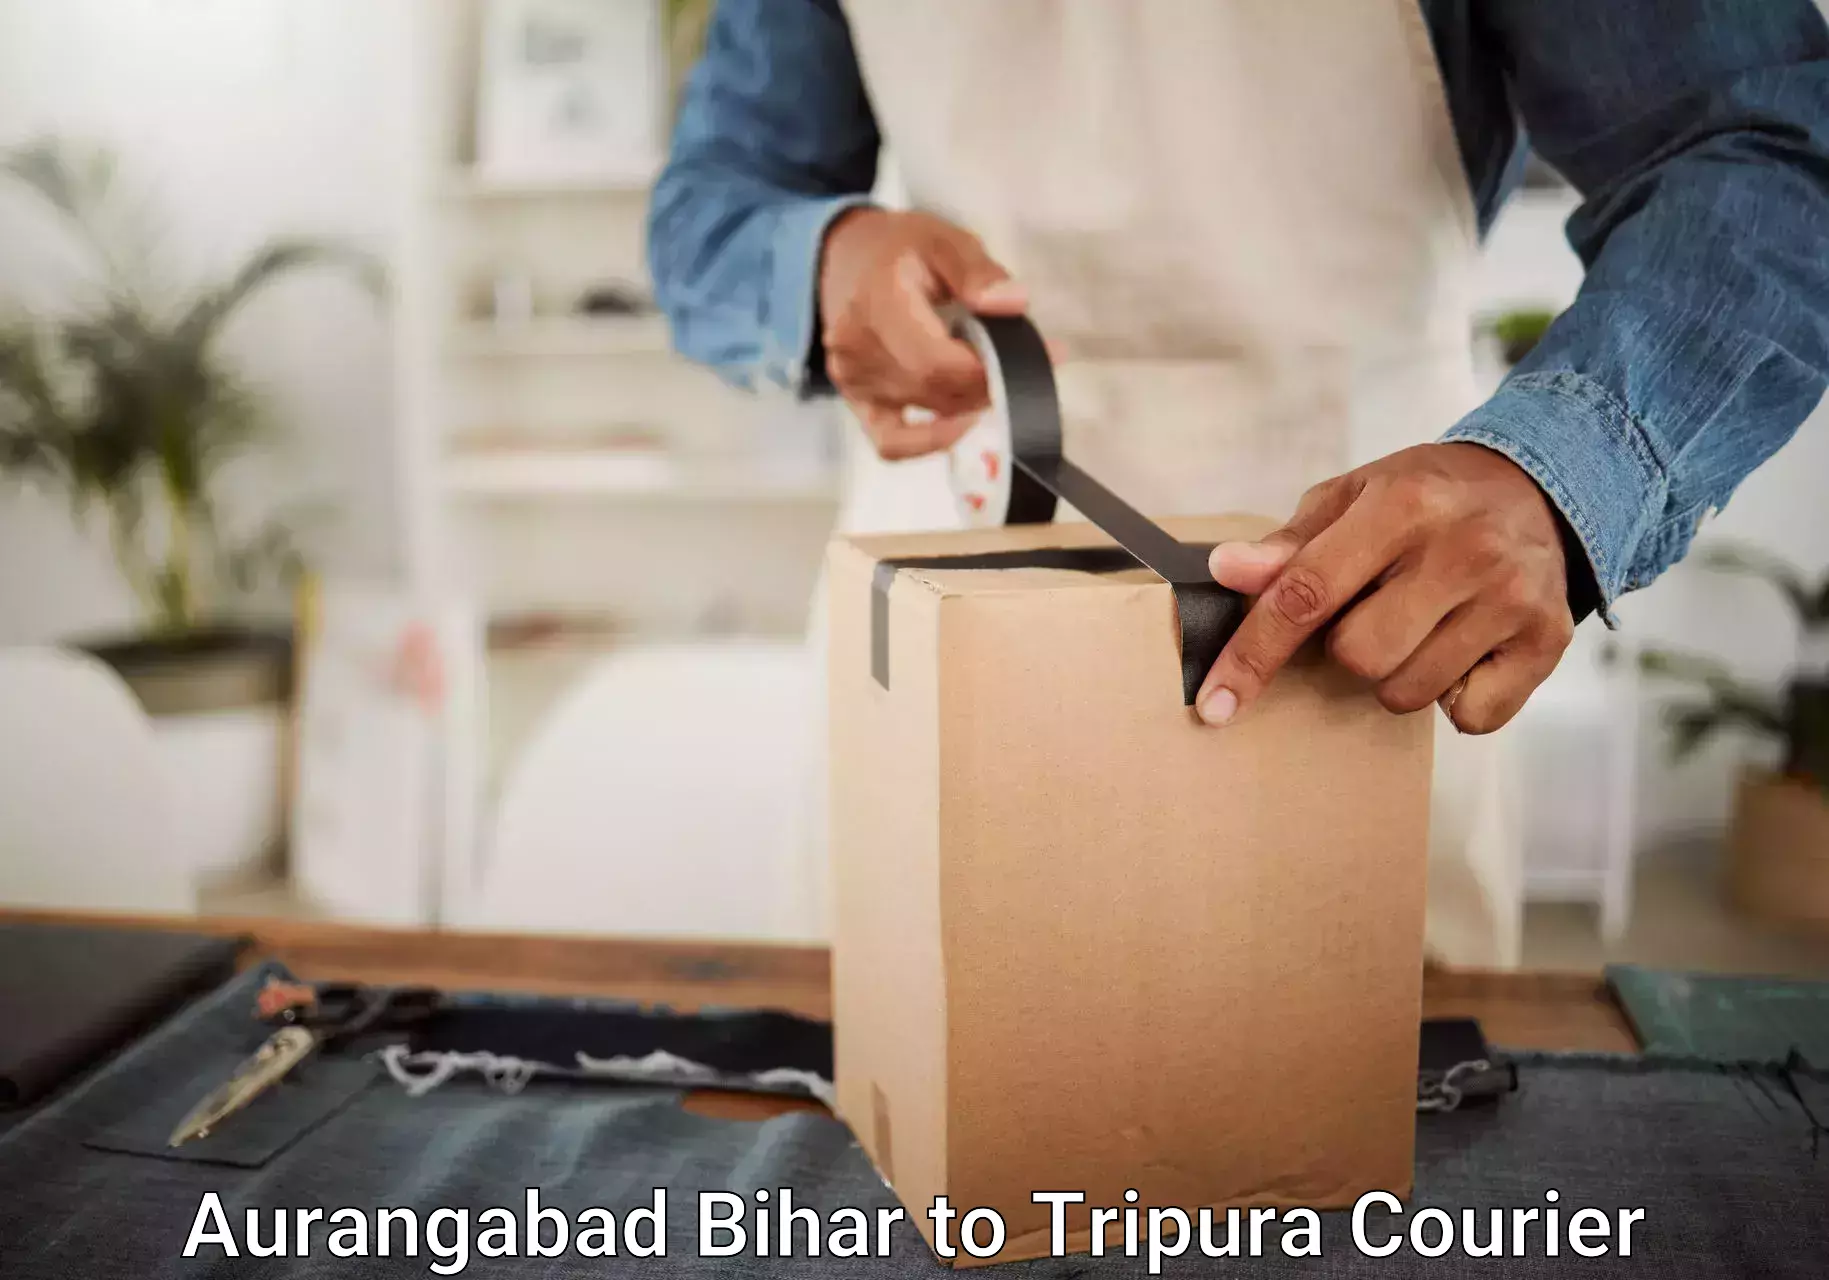 Hassle-free luggage shipping Aurangabad Bihar to West Tripura